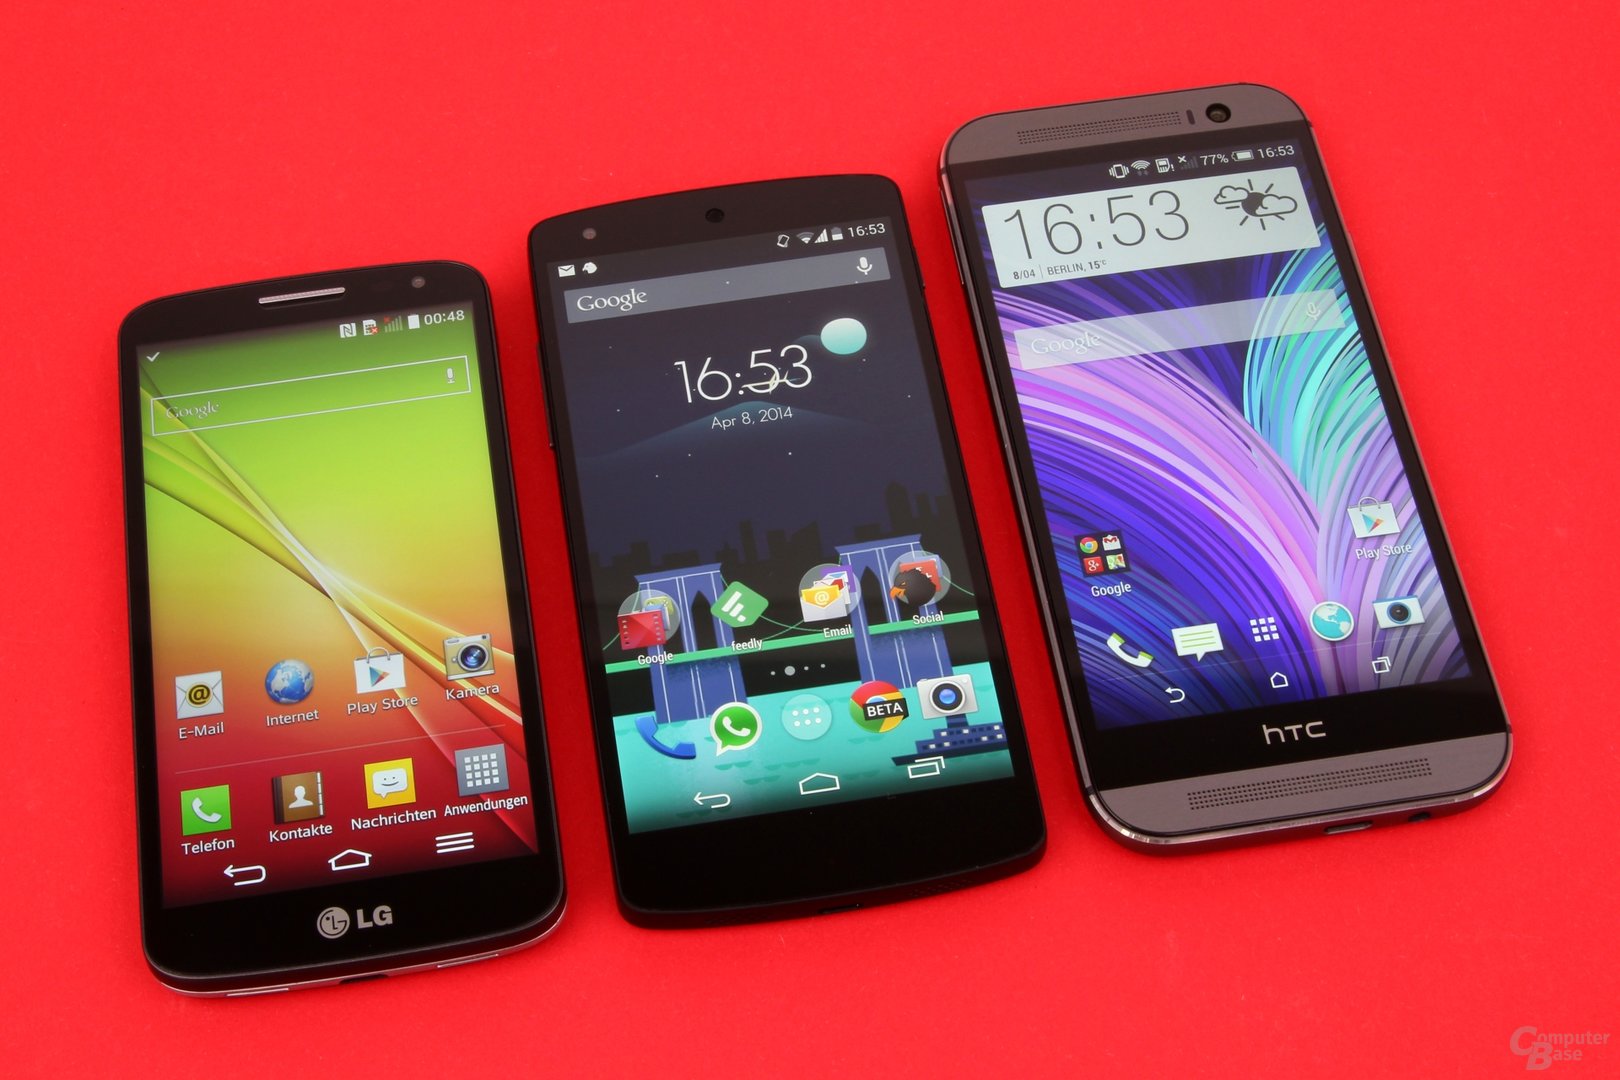 Größenvergleich: LG G2 Mini / Google Nexus 5 / HTC One (M8)